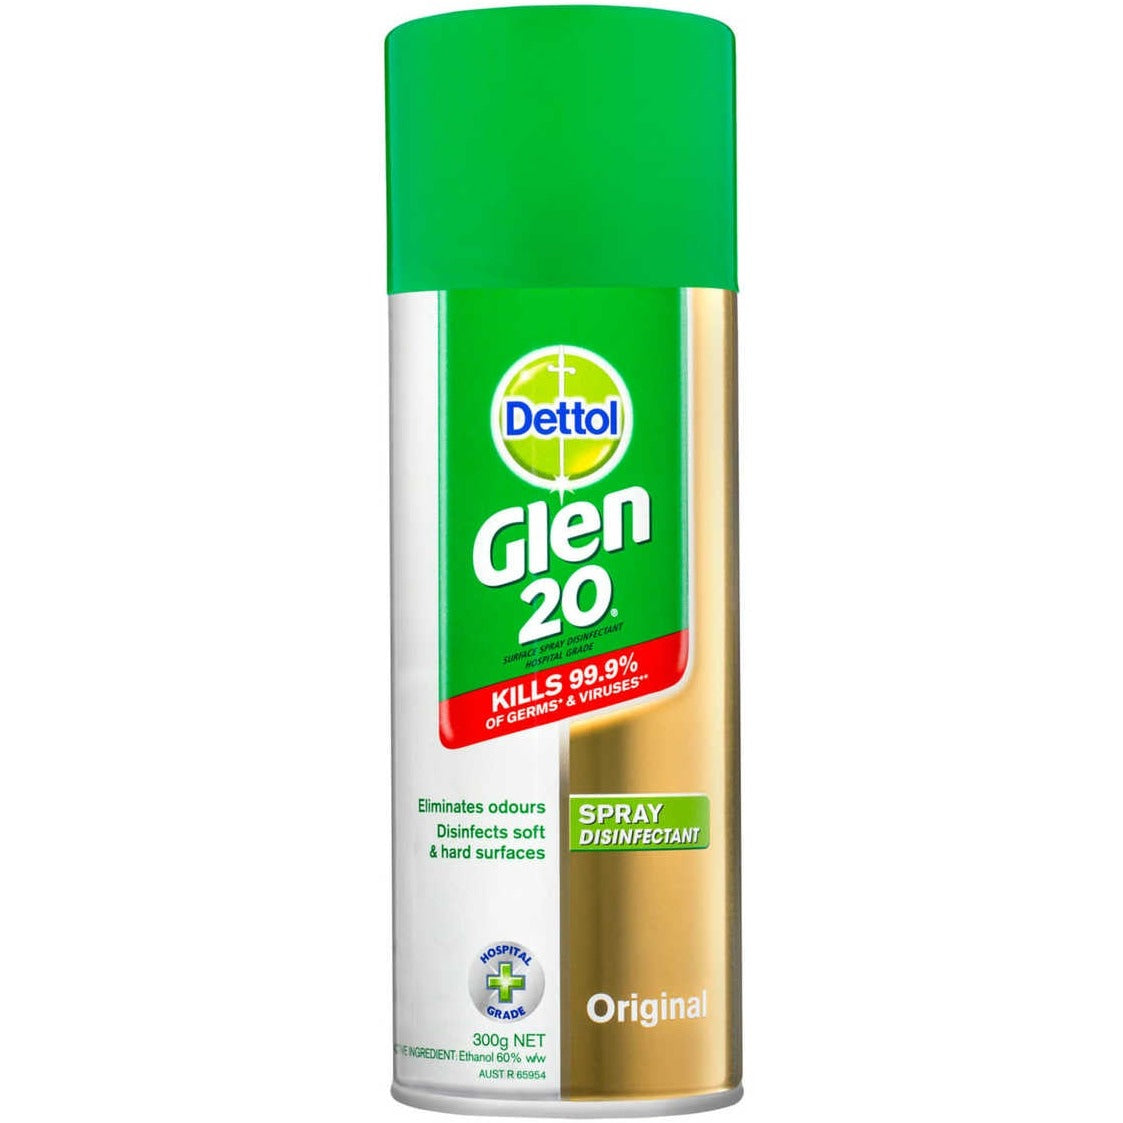 Dettol Glen 20 Spray Disinfectant 300g